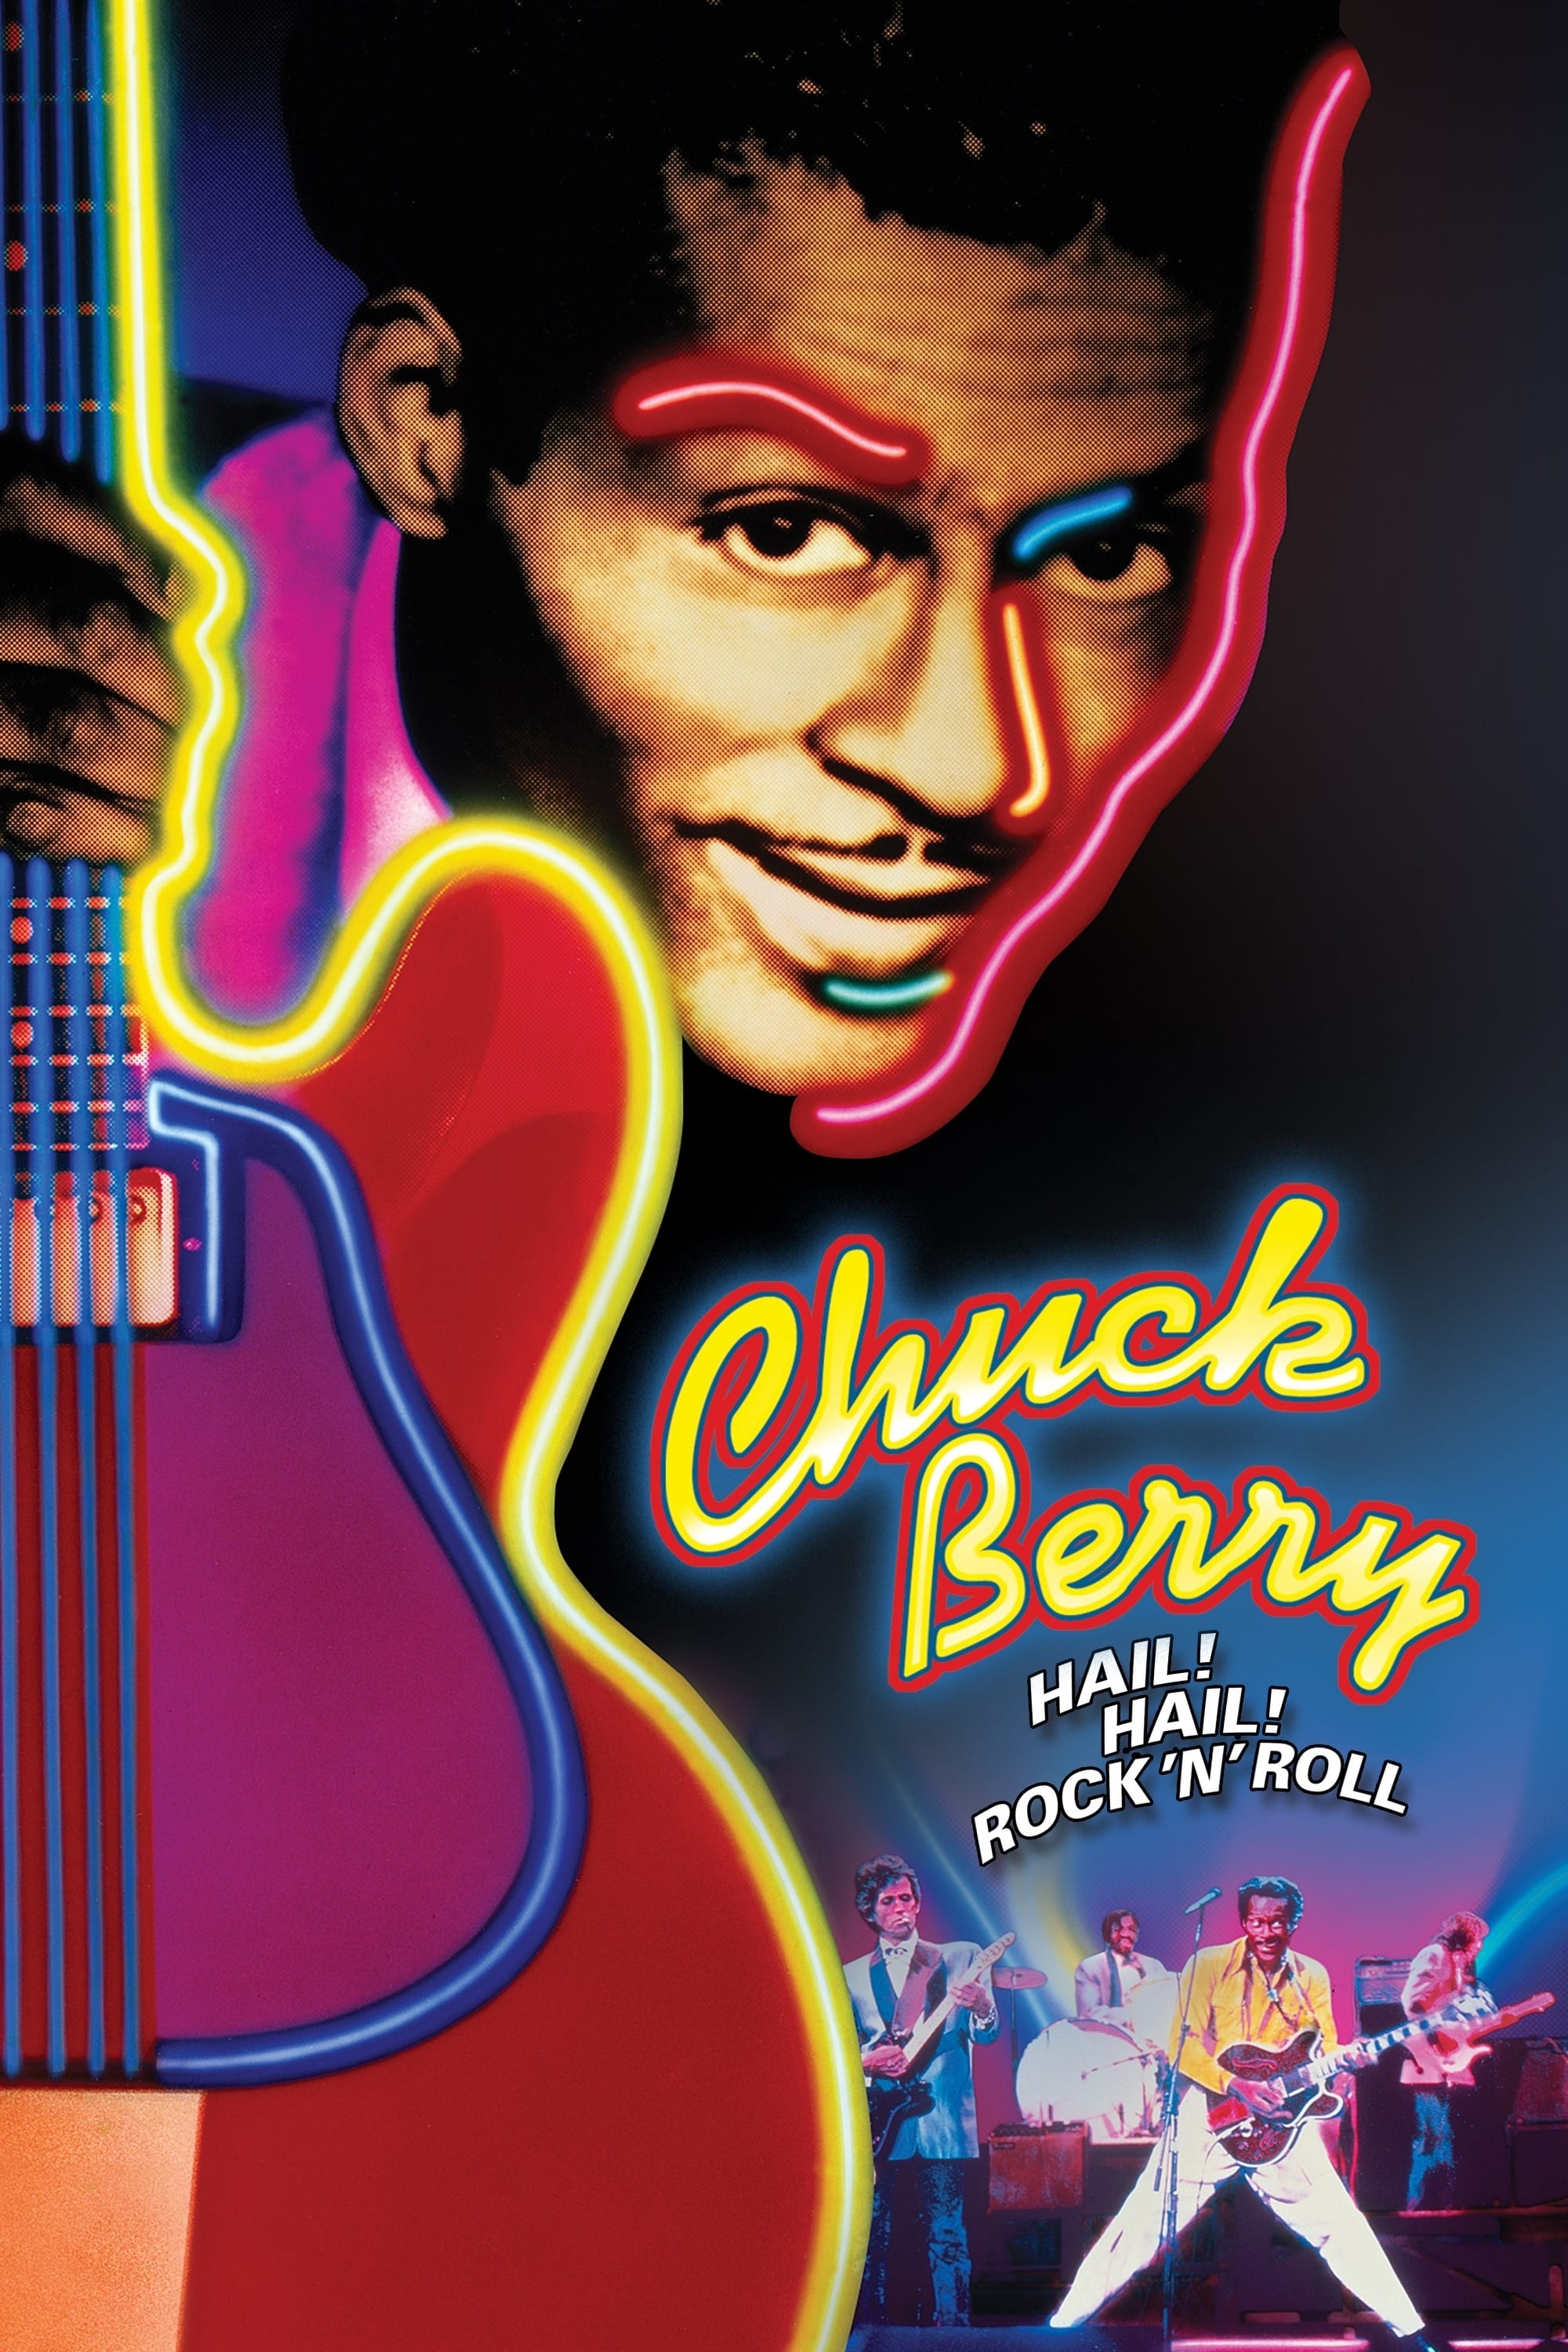 Chuck Berry - Hail! Hail! Rock 'n' Roll (1987)